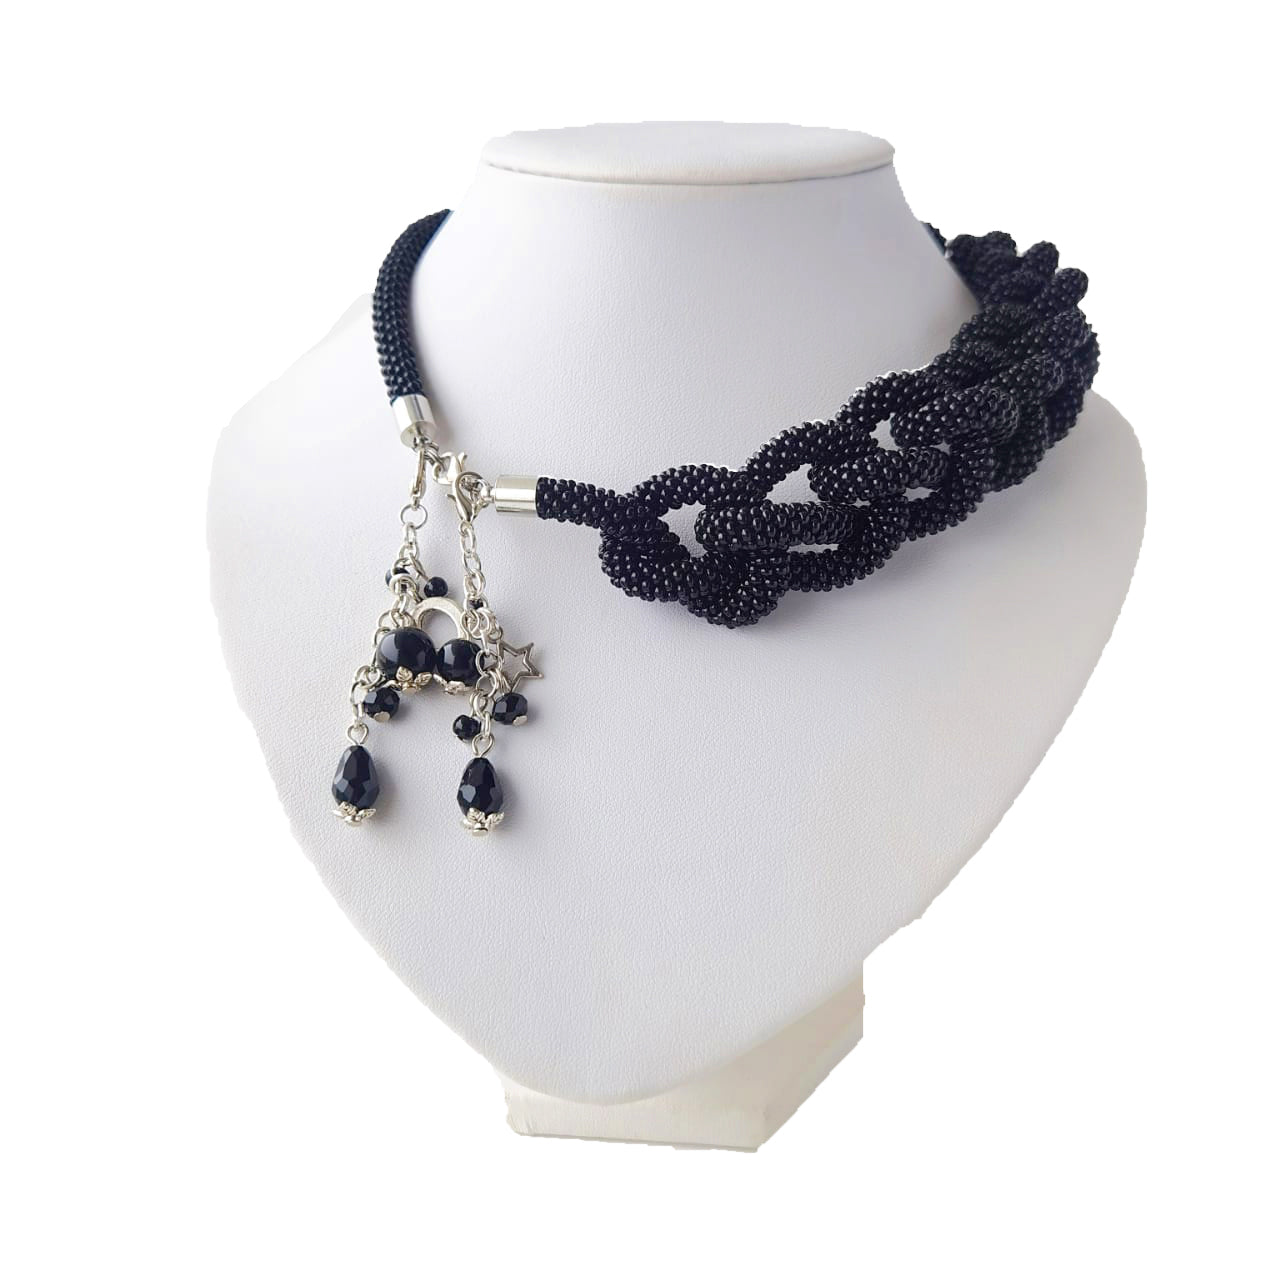 Layla Lariat necklace, Lariat Necklace, Y Necklace,long chunky Y necklace, statement necklace Simple Y Necklace, Falling Necklace, Long Necklace